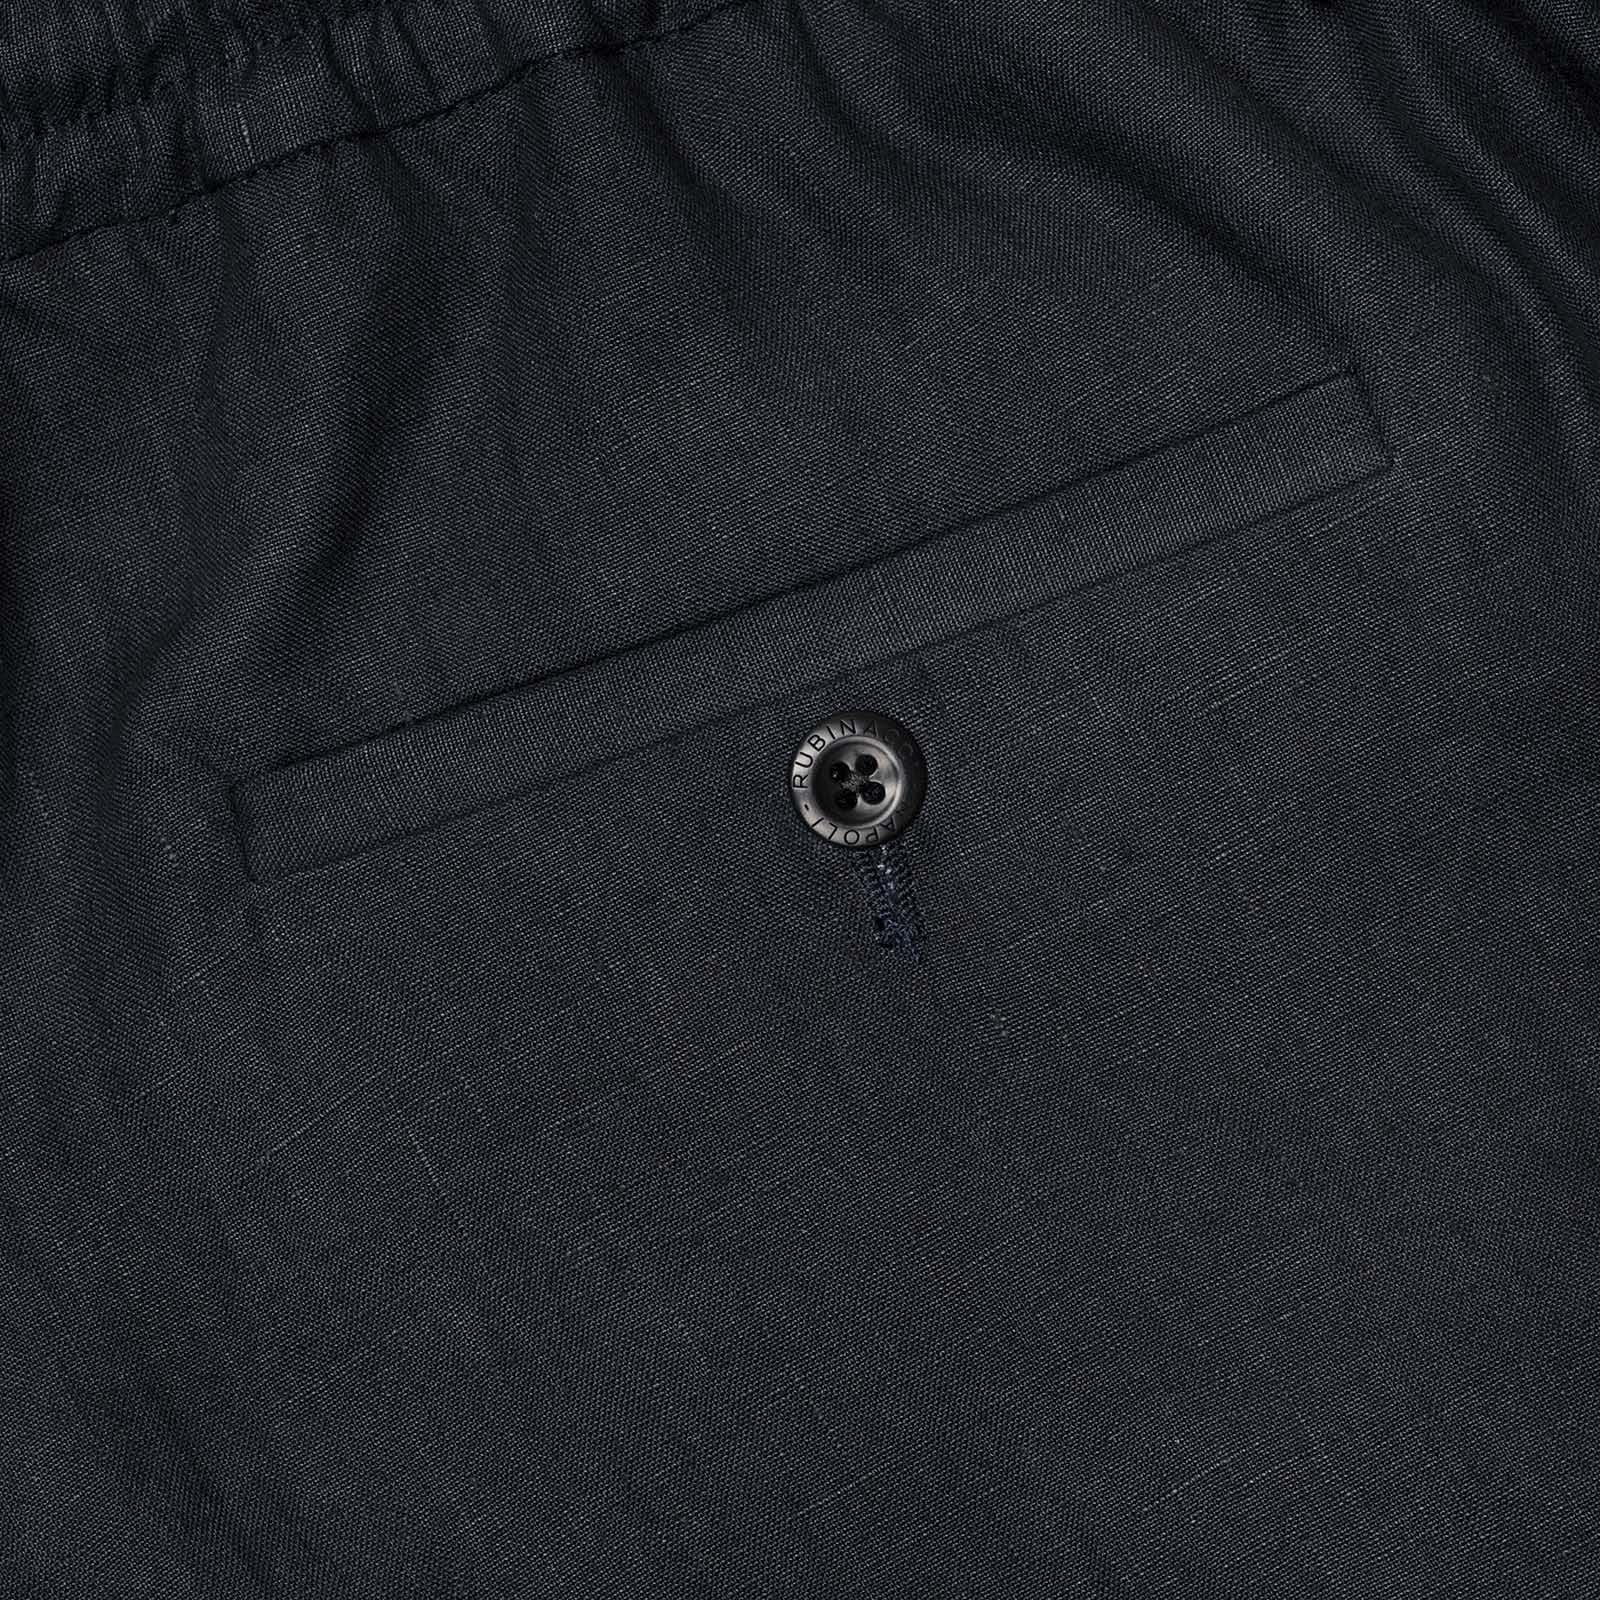 Ready to Wear Trousers — Store — Sprezzatura Eleganza